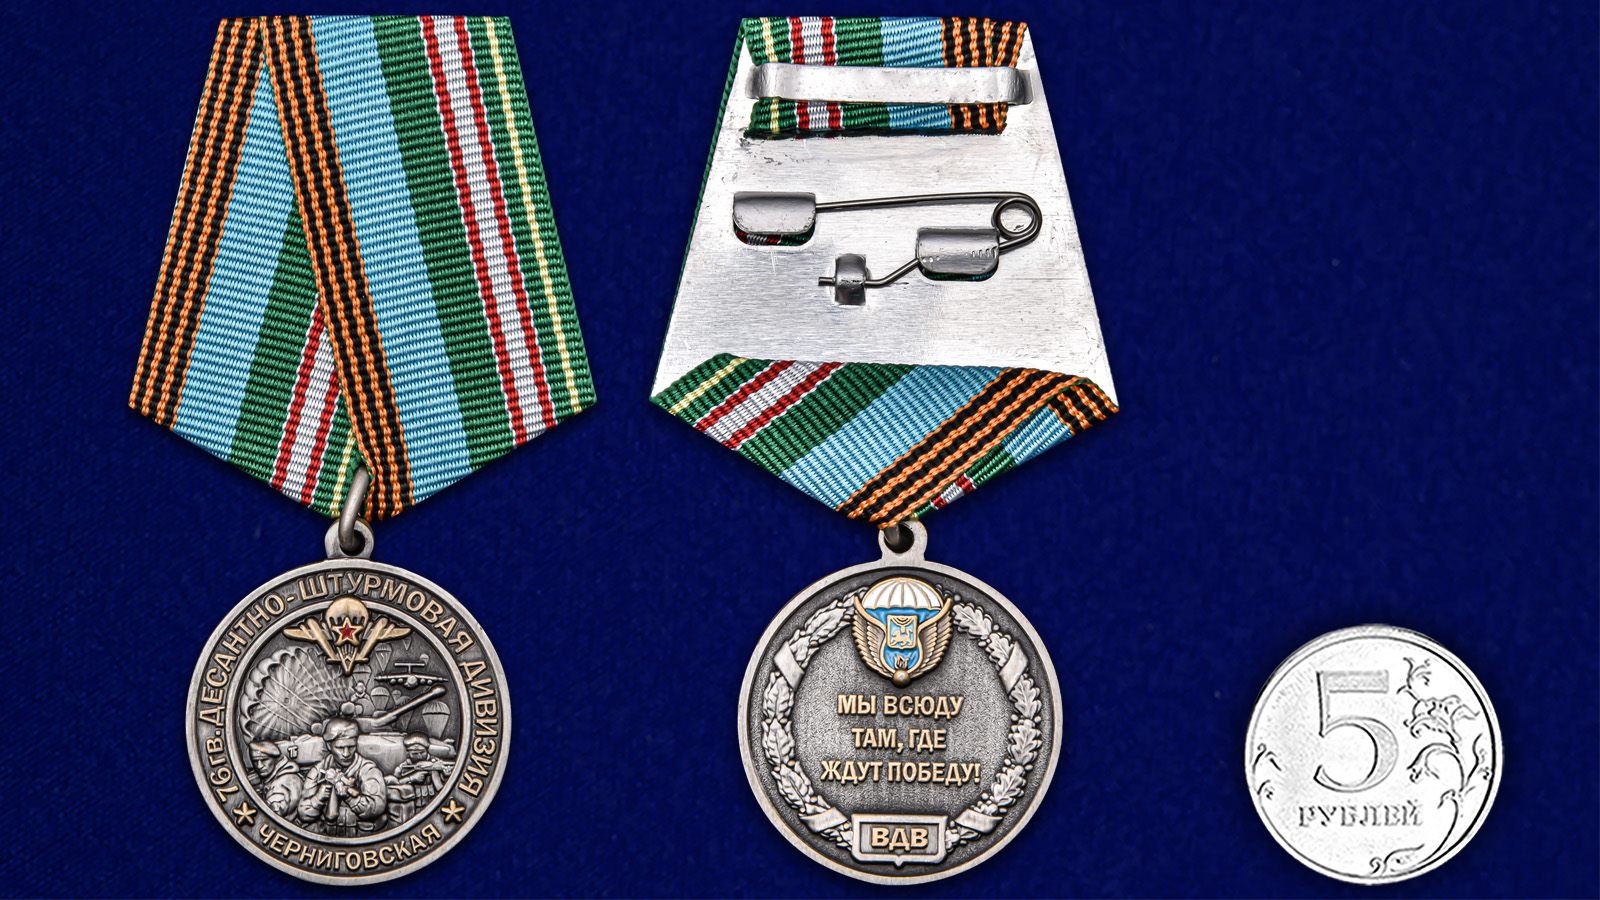 Памятная медаль "76-я гв. Десантно-штурмовая дивизия" 